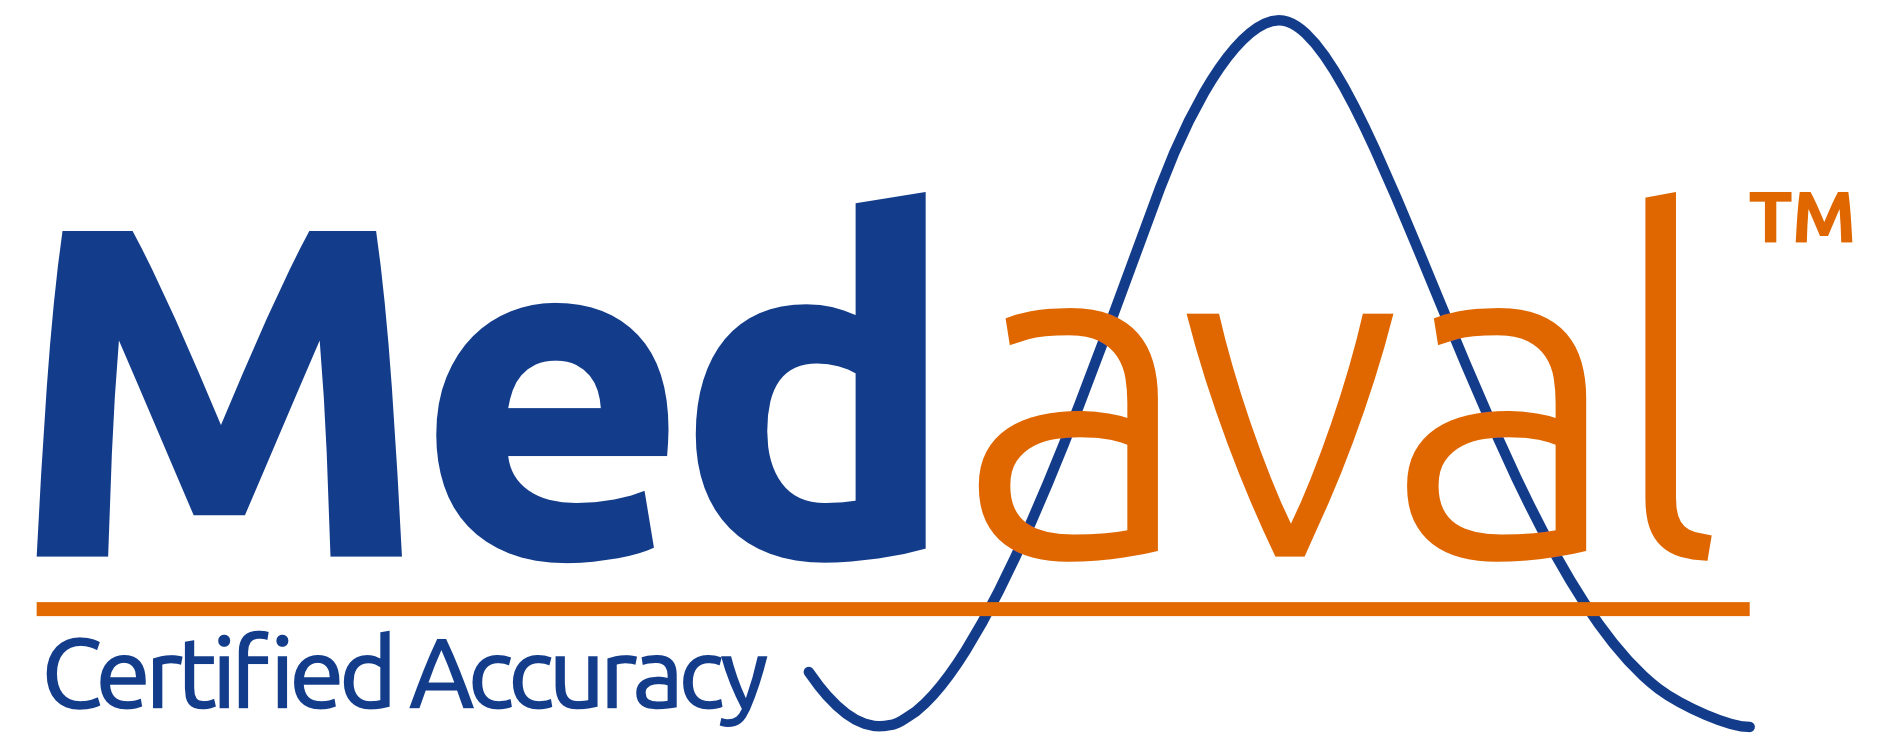 Medaval Logo